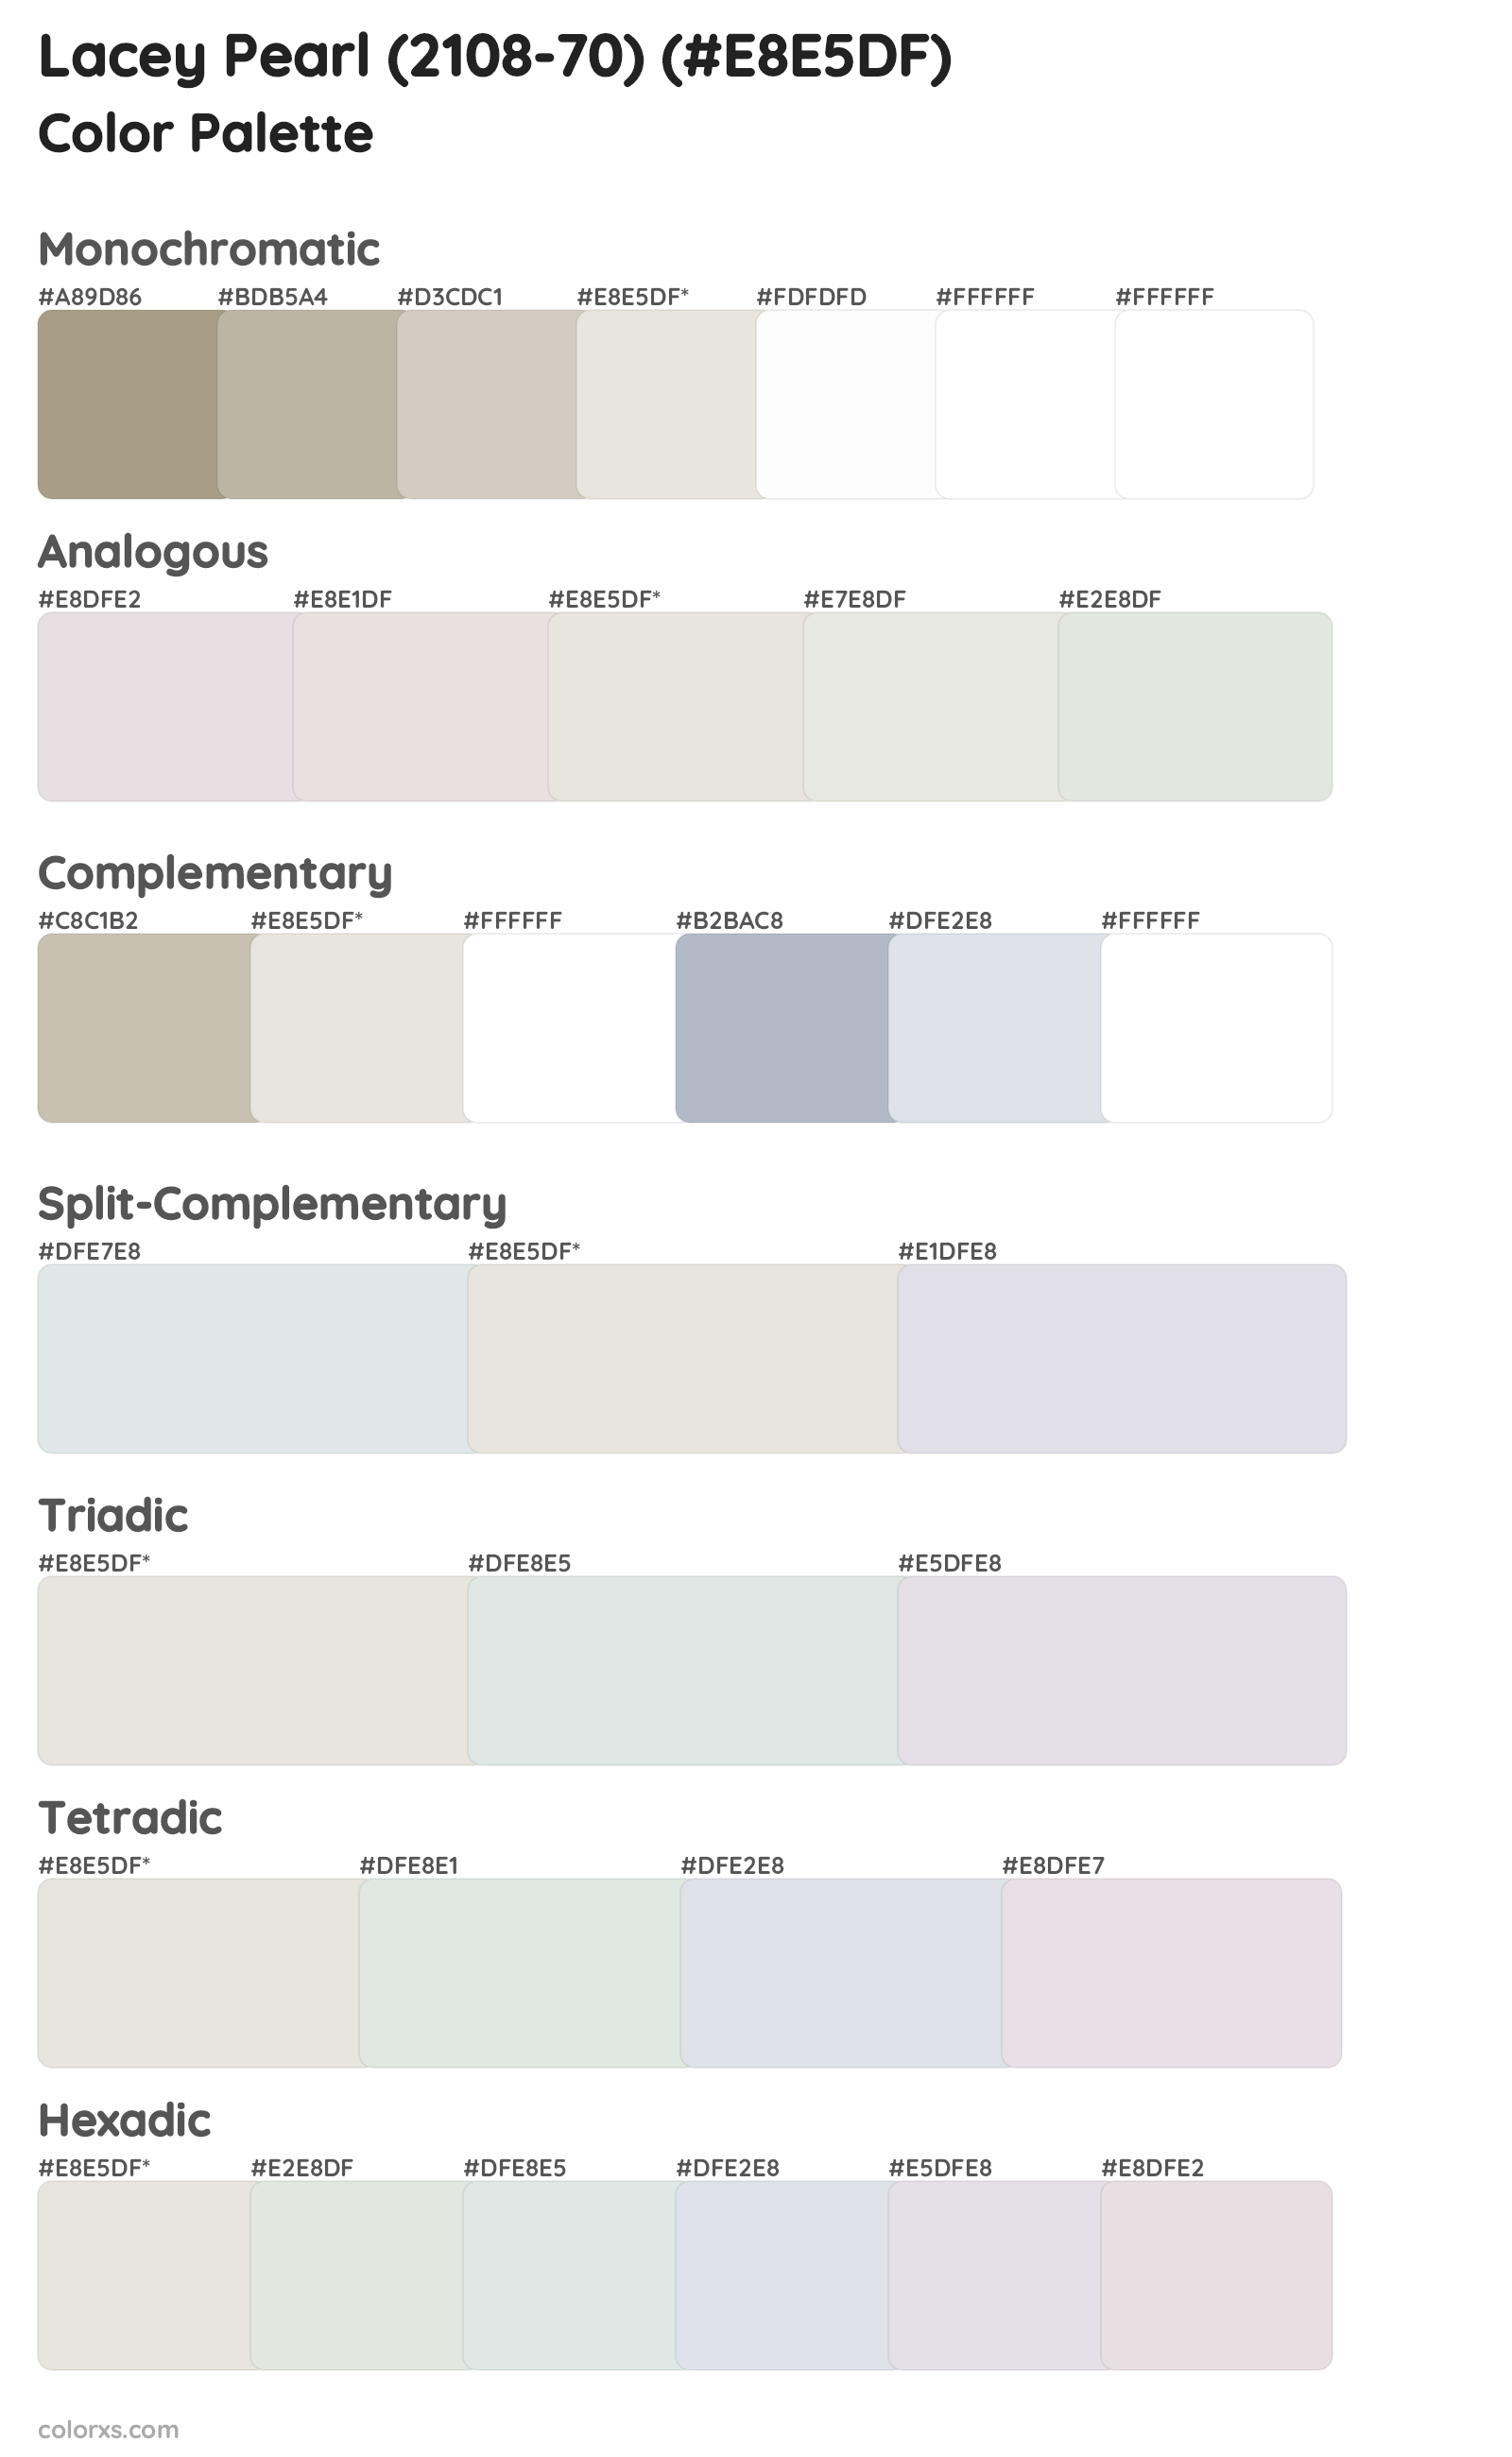 Lacey Pearl (2108-70) Color Scheme Palettes